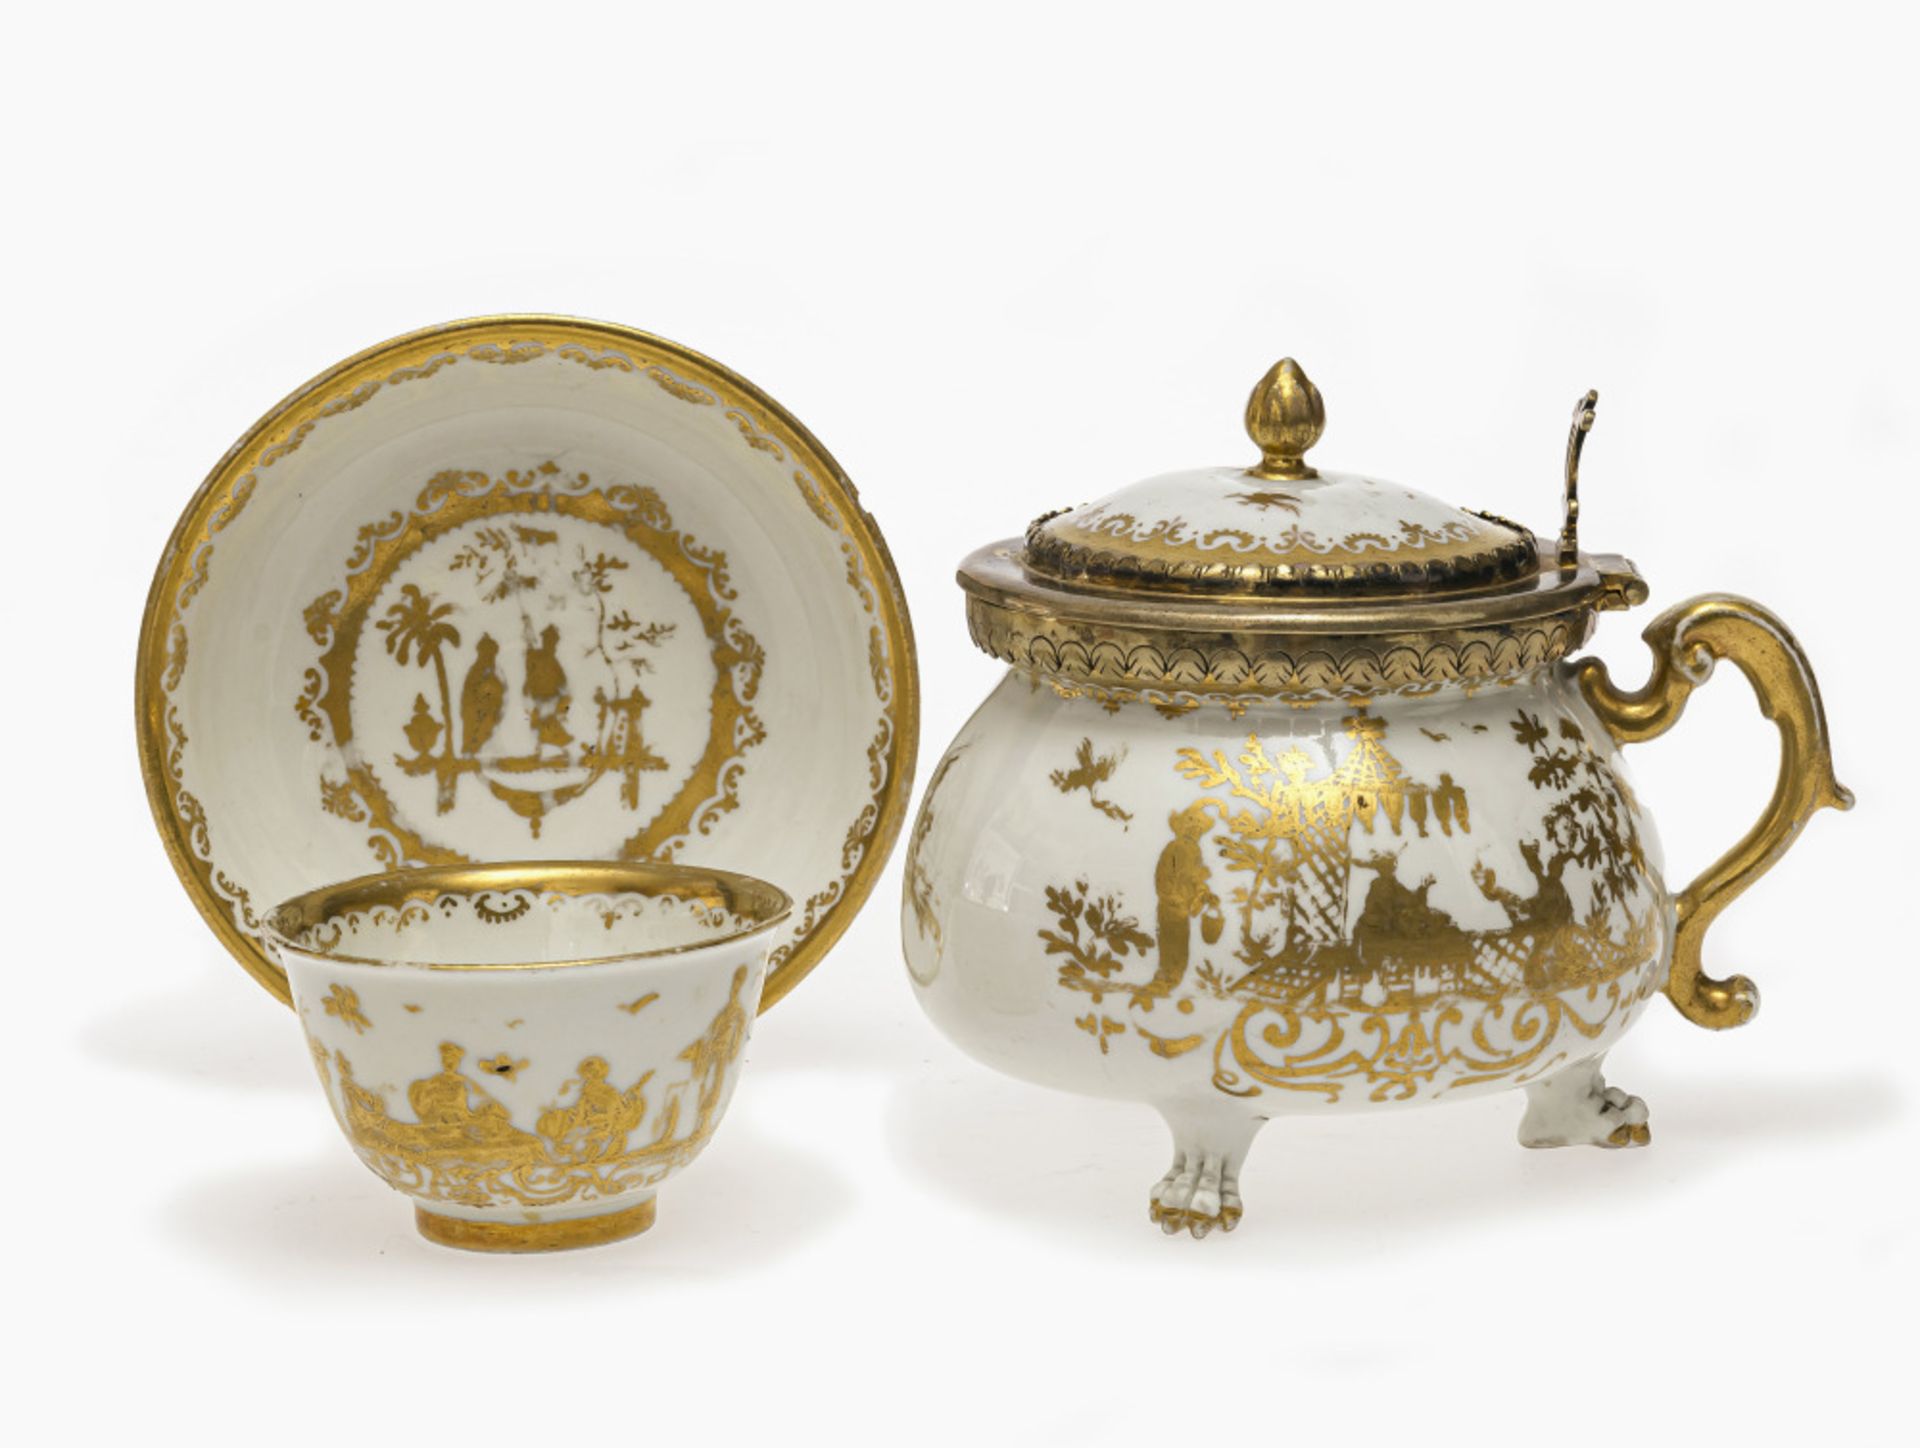 Rahmtopf auf Tatzenfüßen, Koppchen und Untertasse - Meissen, um 1720/1730, Golddekor in der Art de